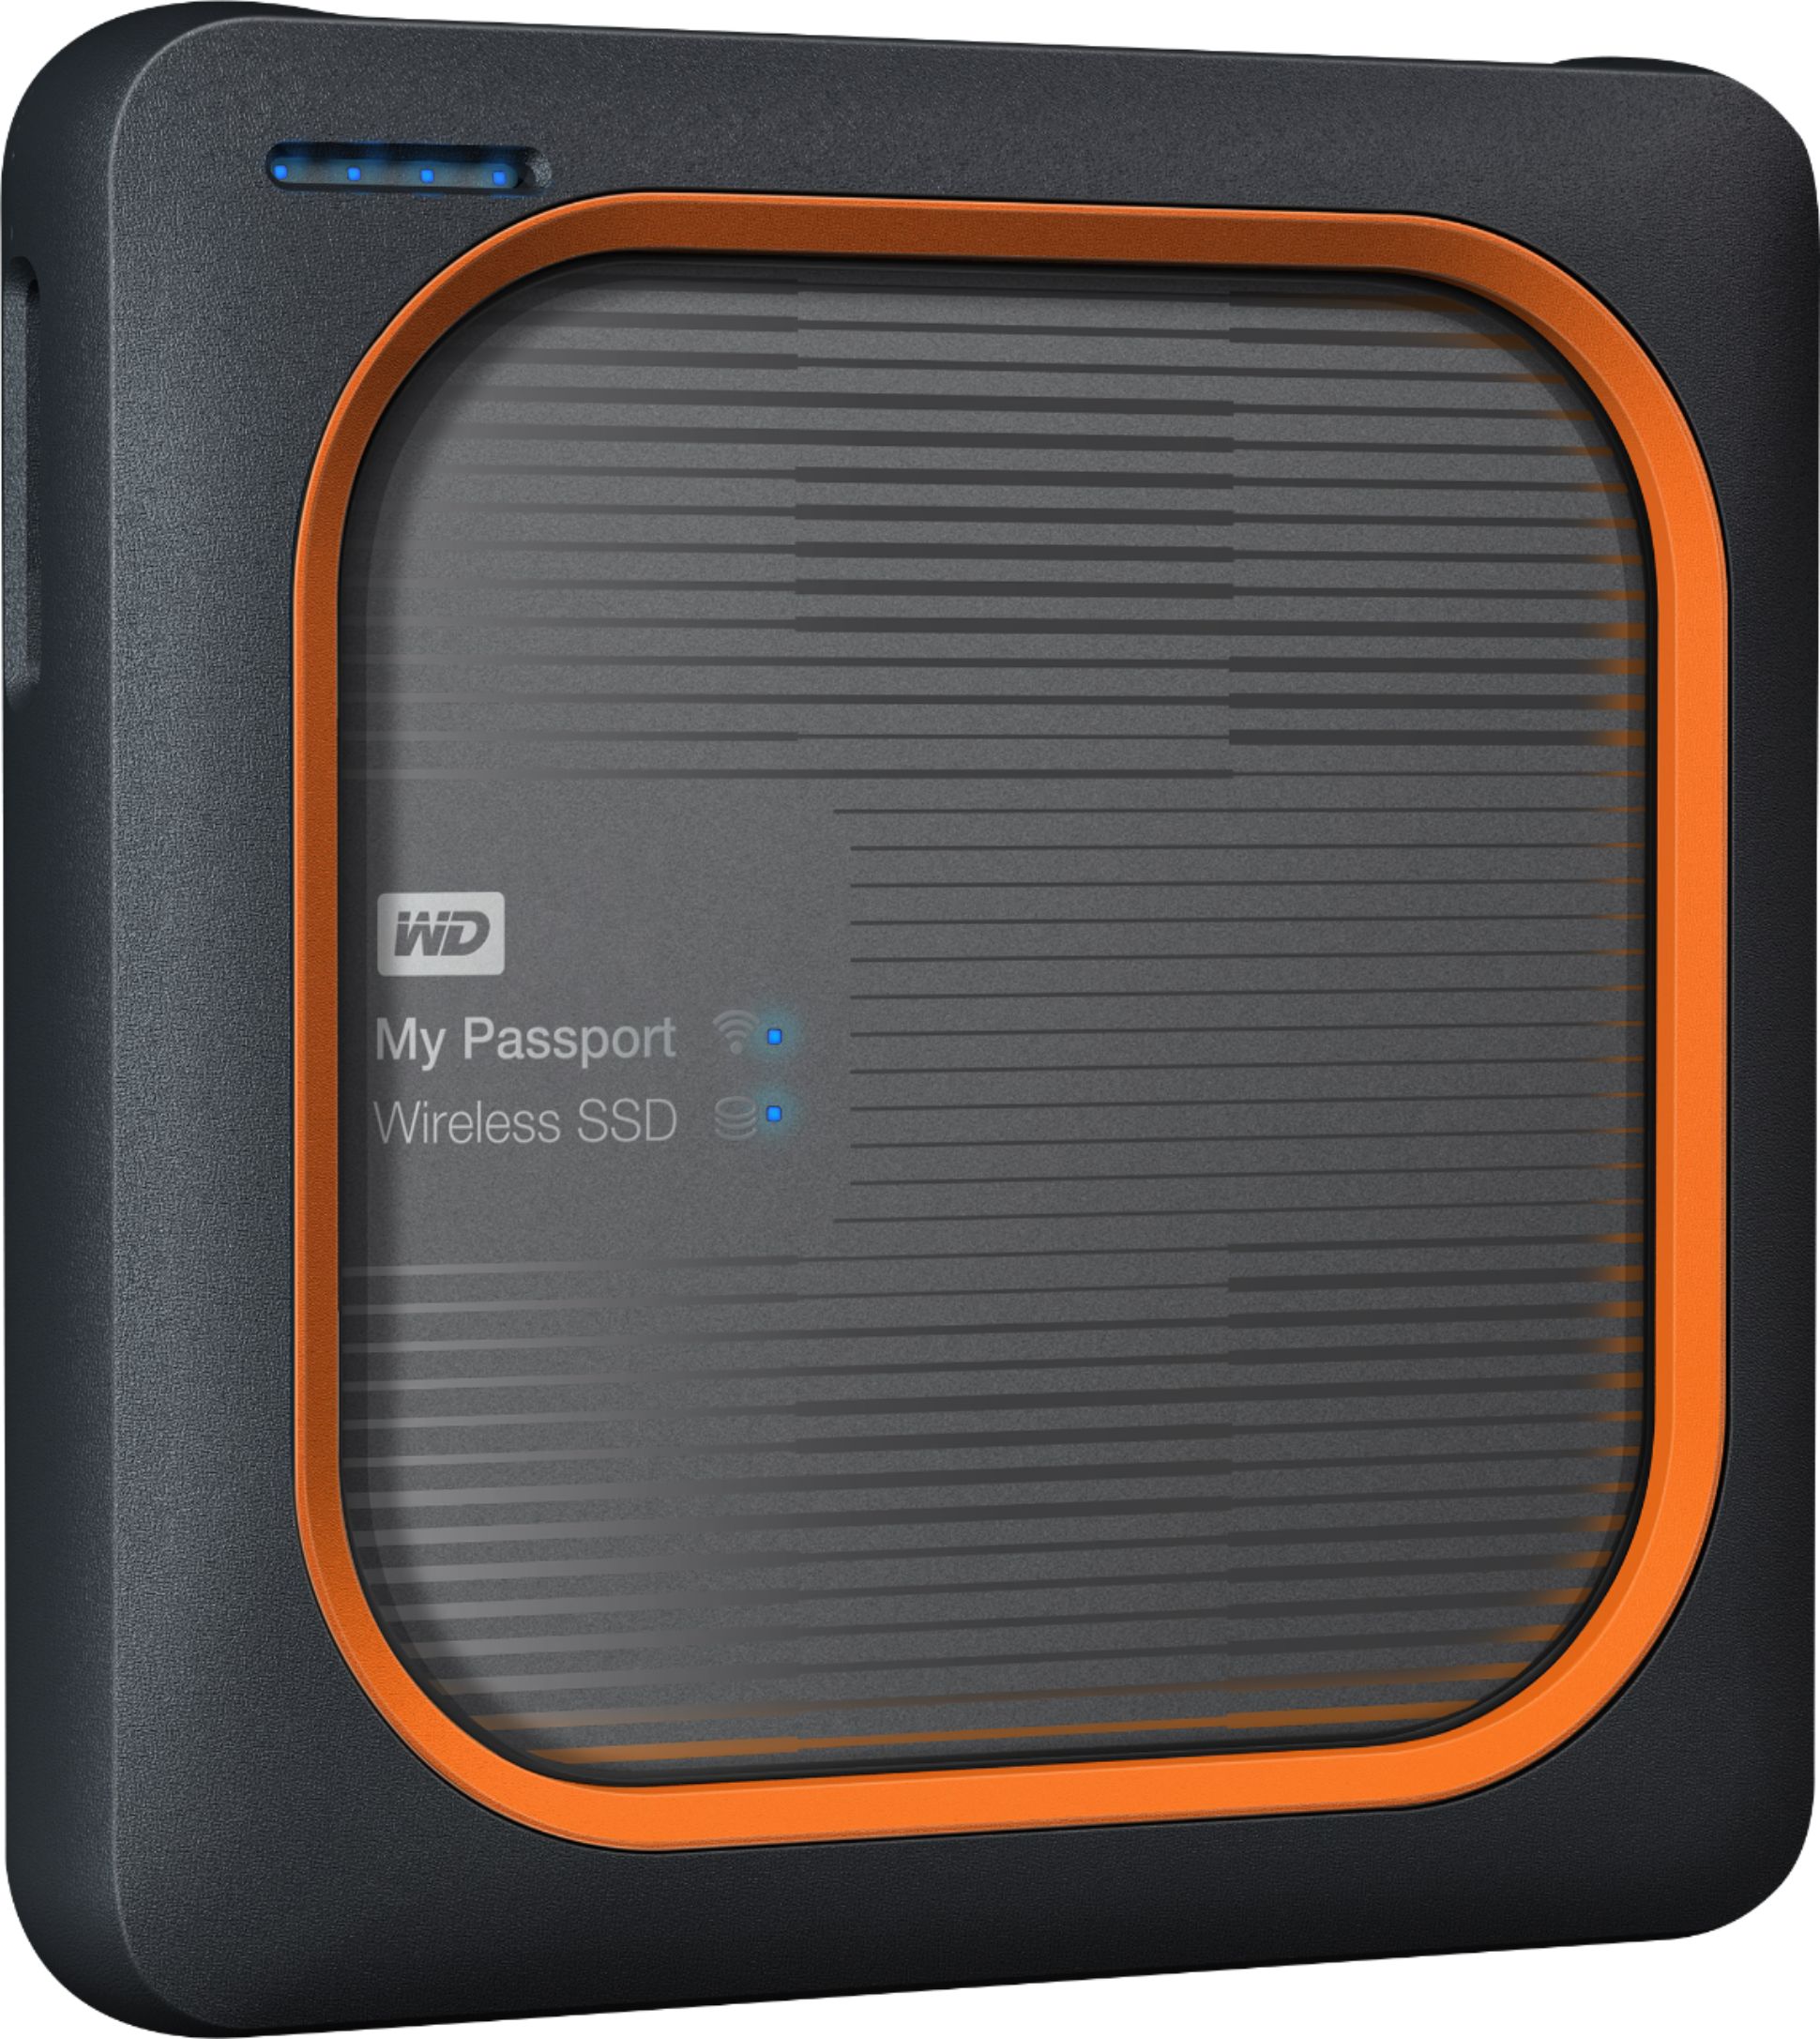 WiFi USB 3.0  WDBAMJ0010BGY-NESN WD 1TB My Passport Wireless SSD External Portable Drive 